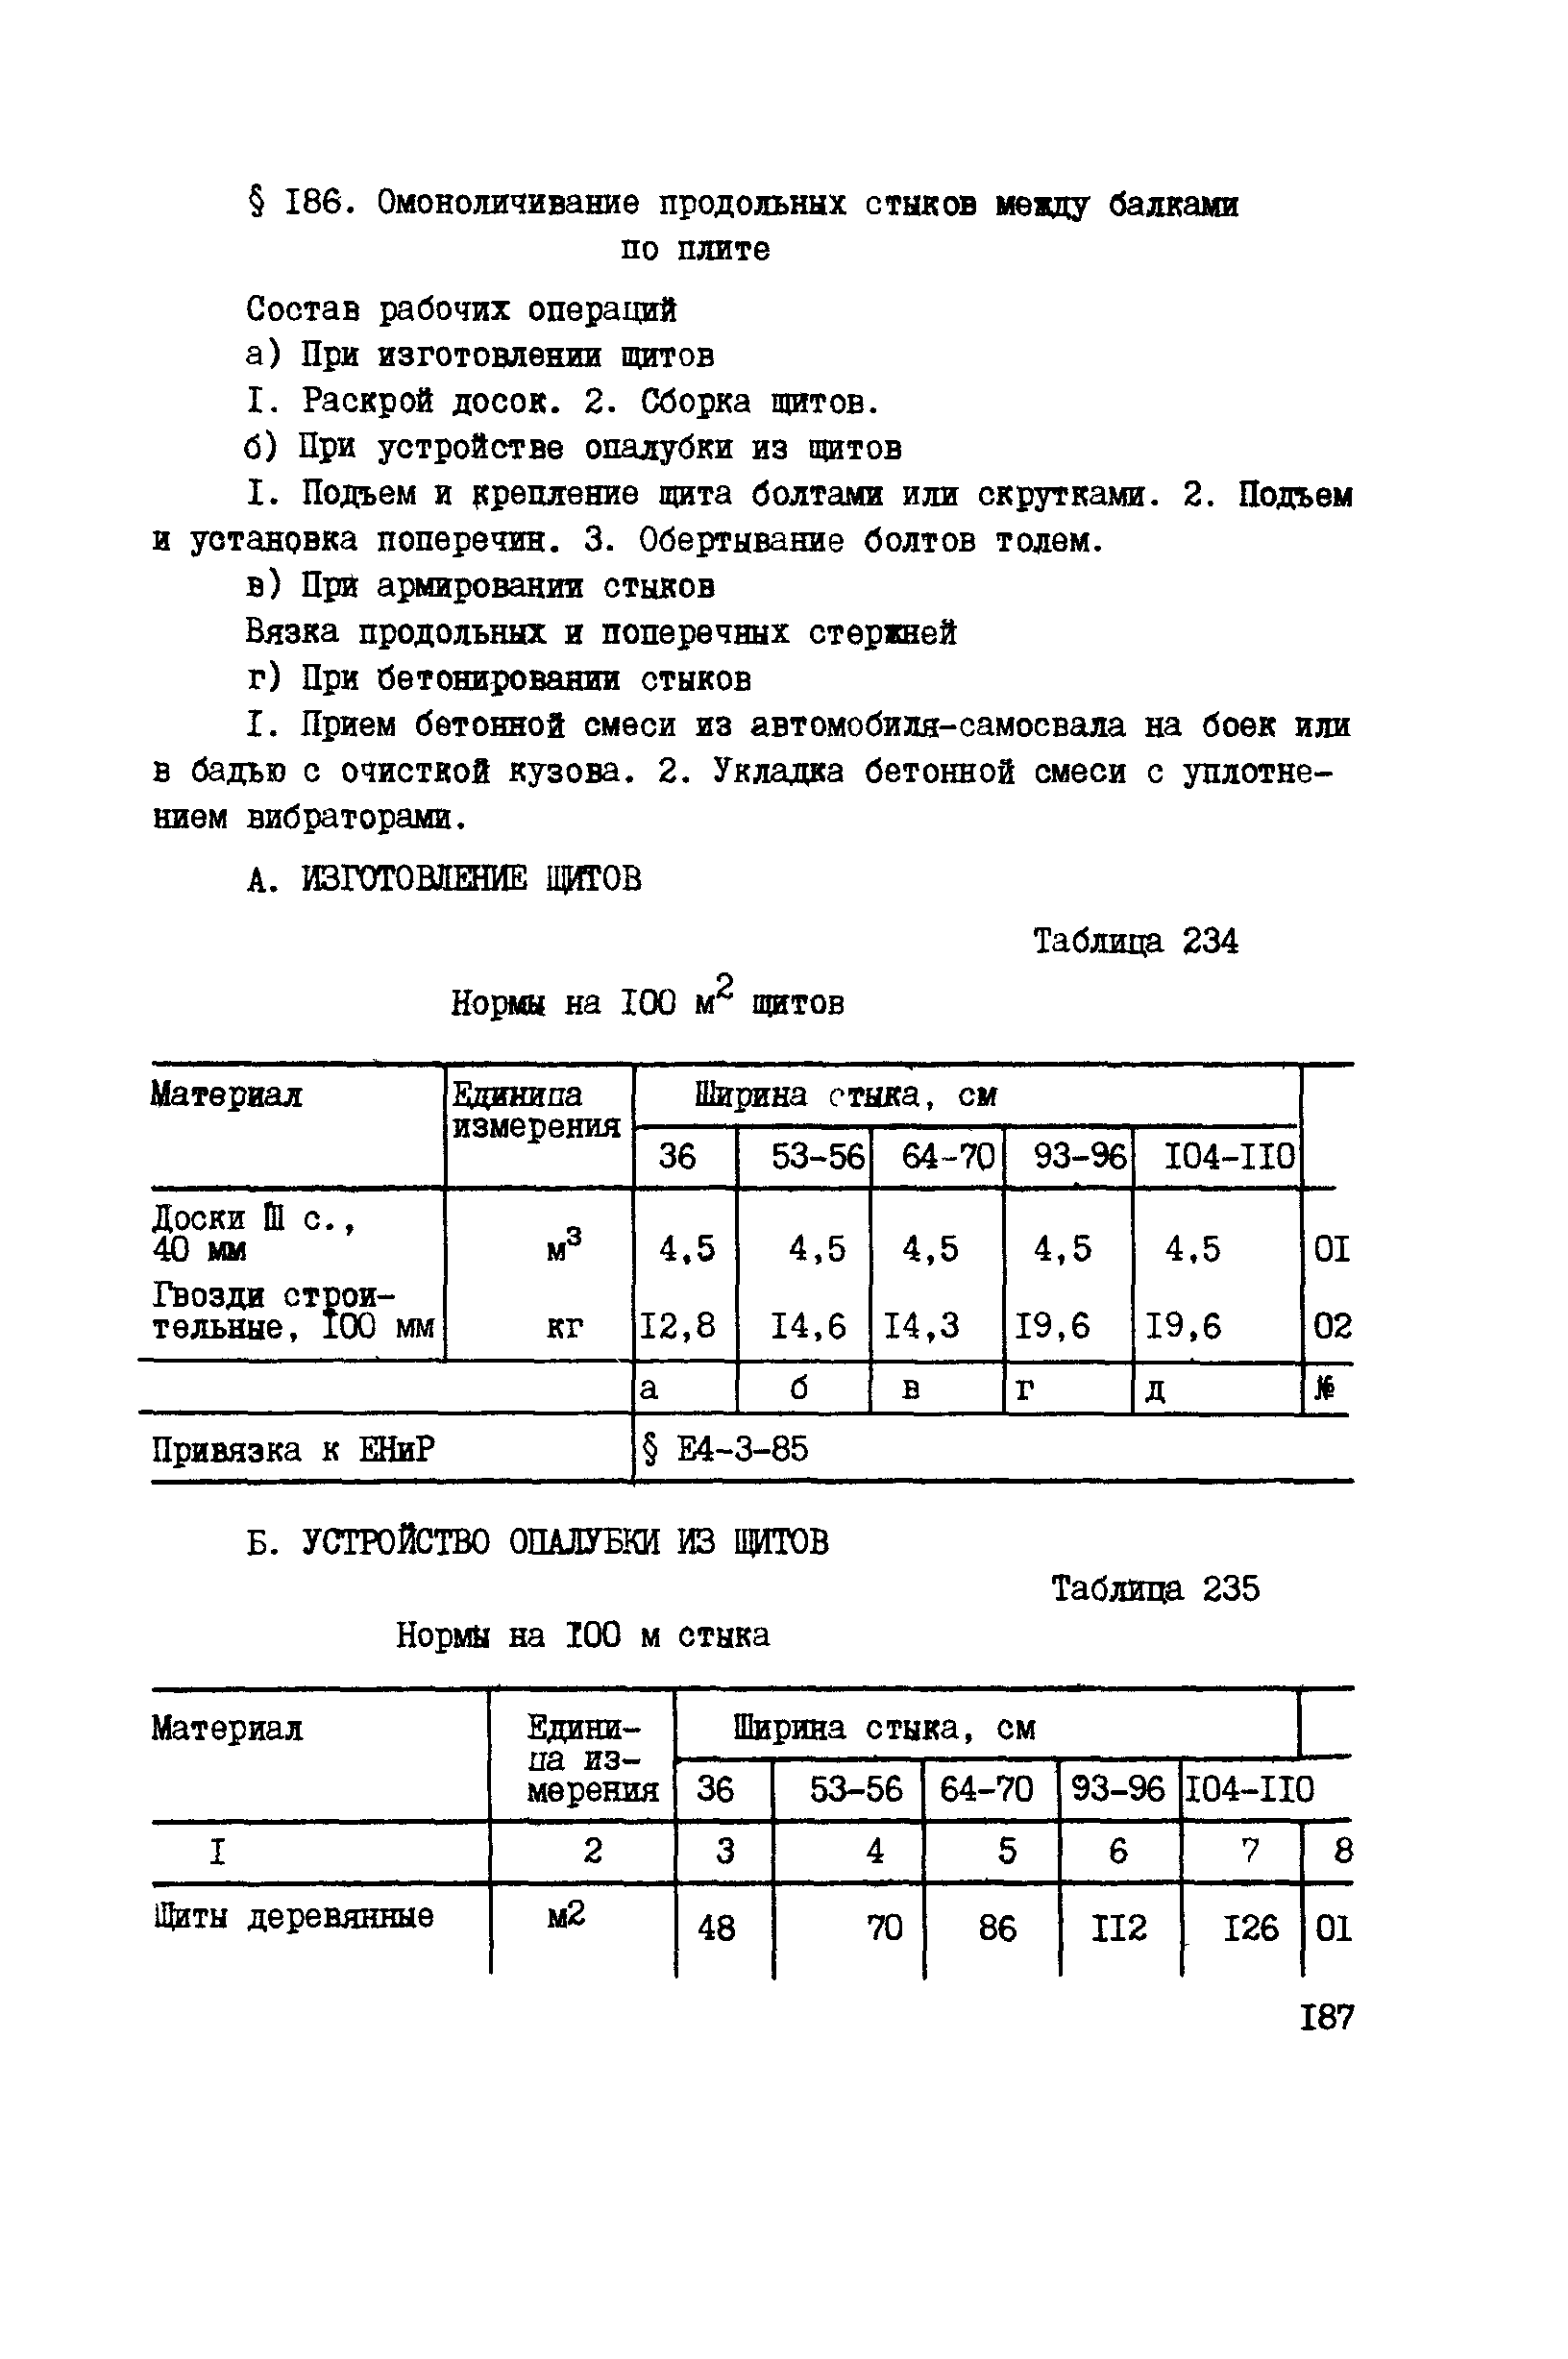 ВСН 42-91